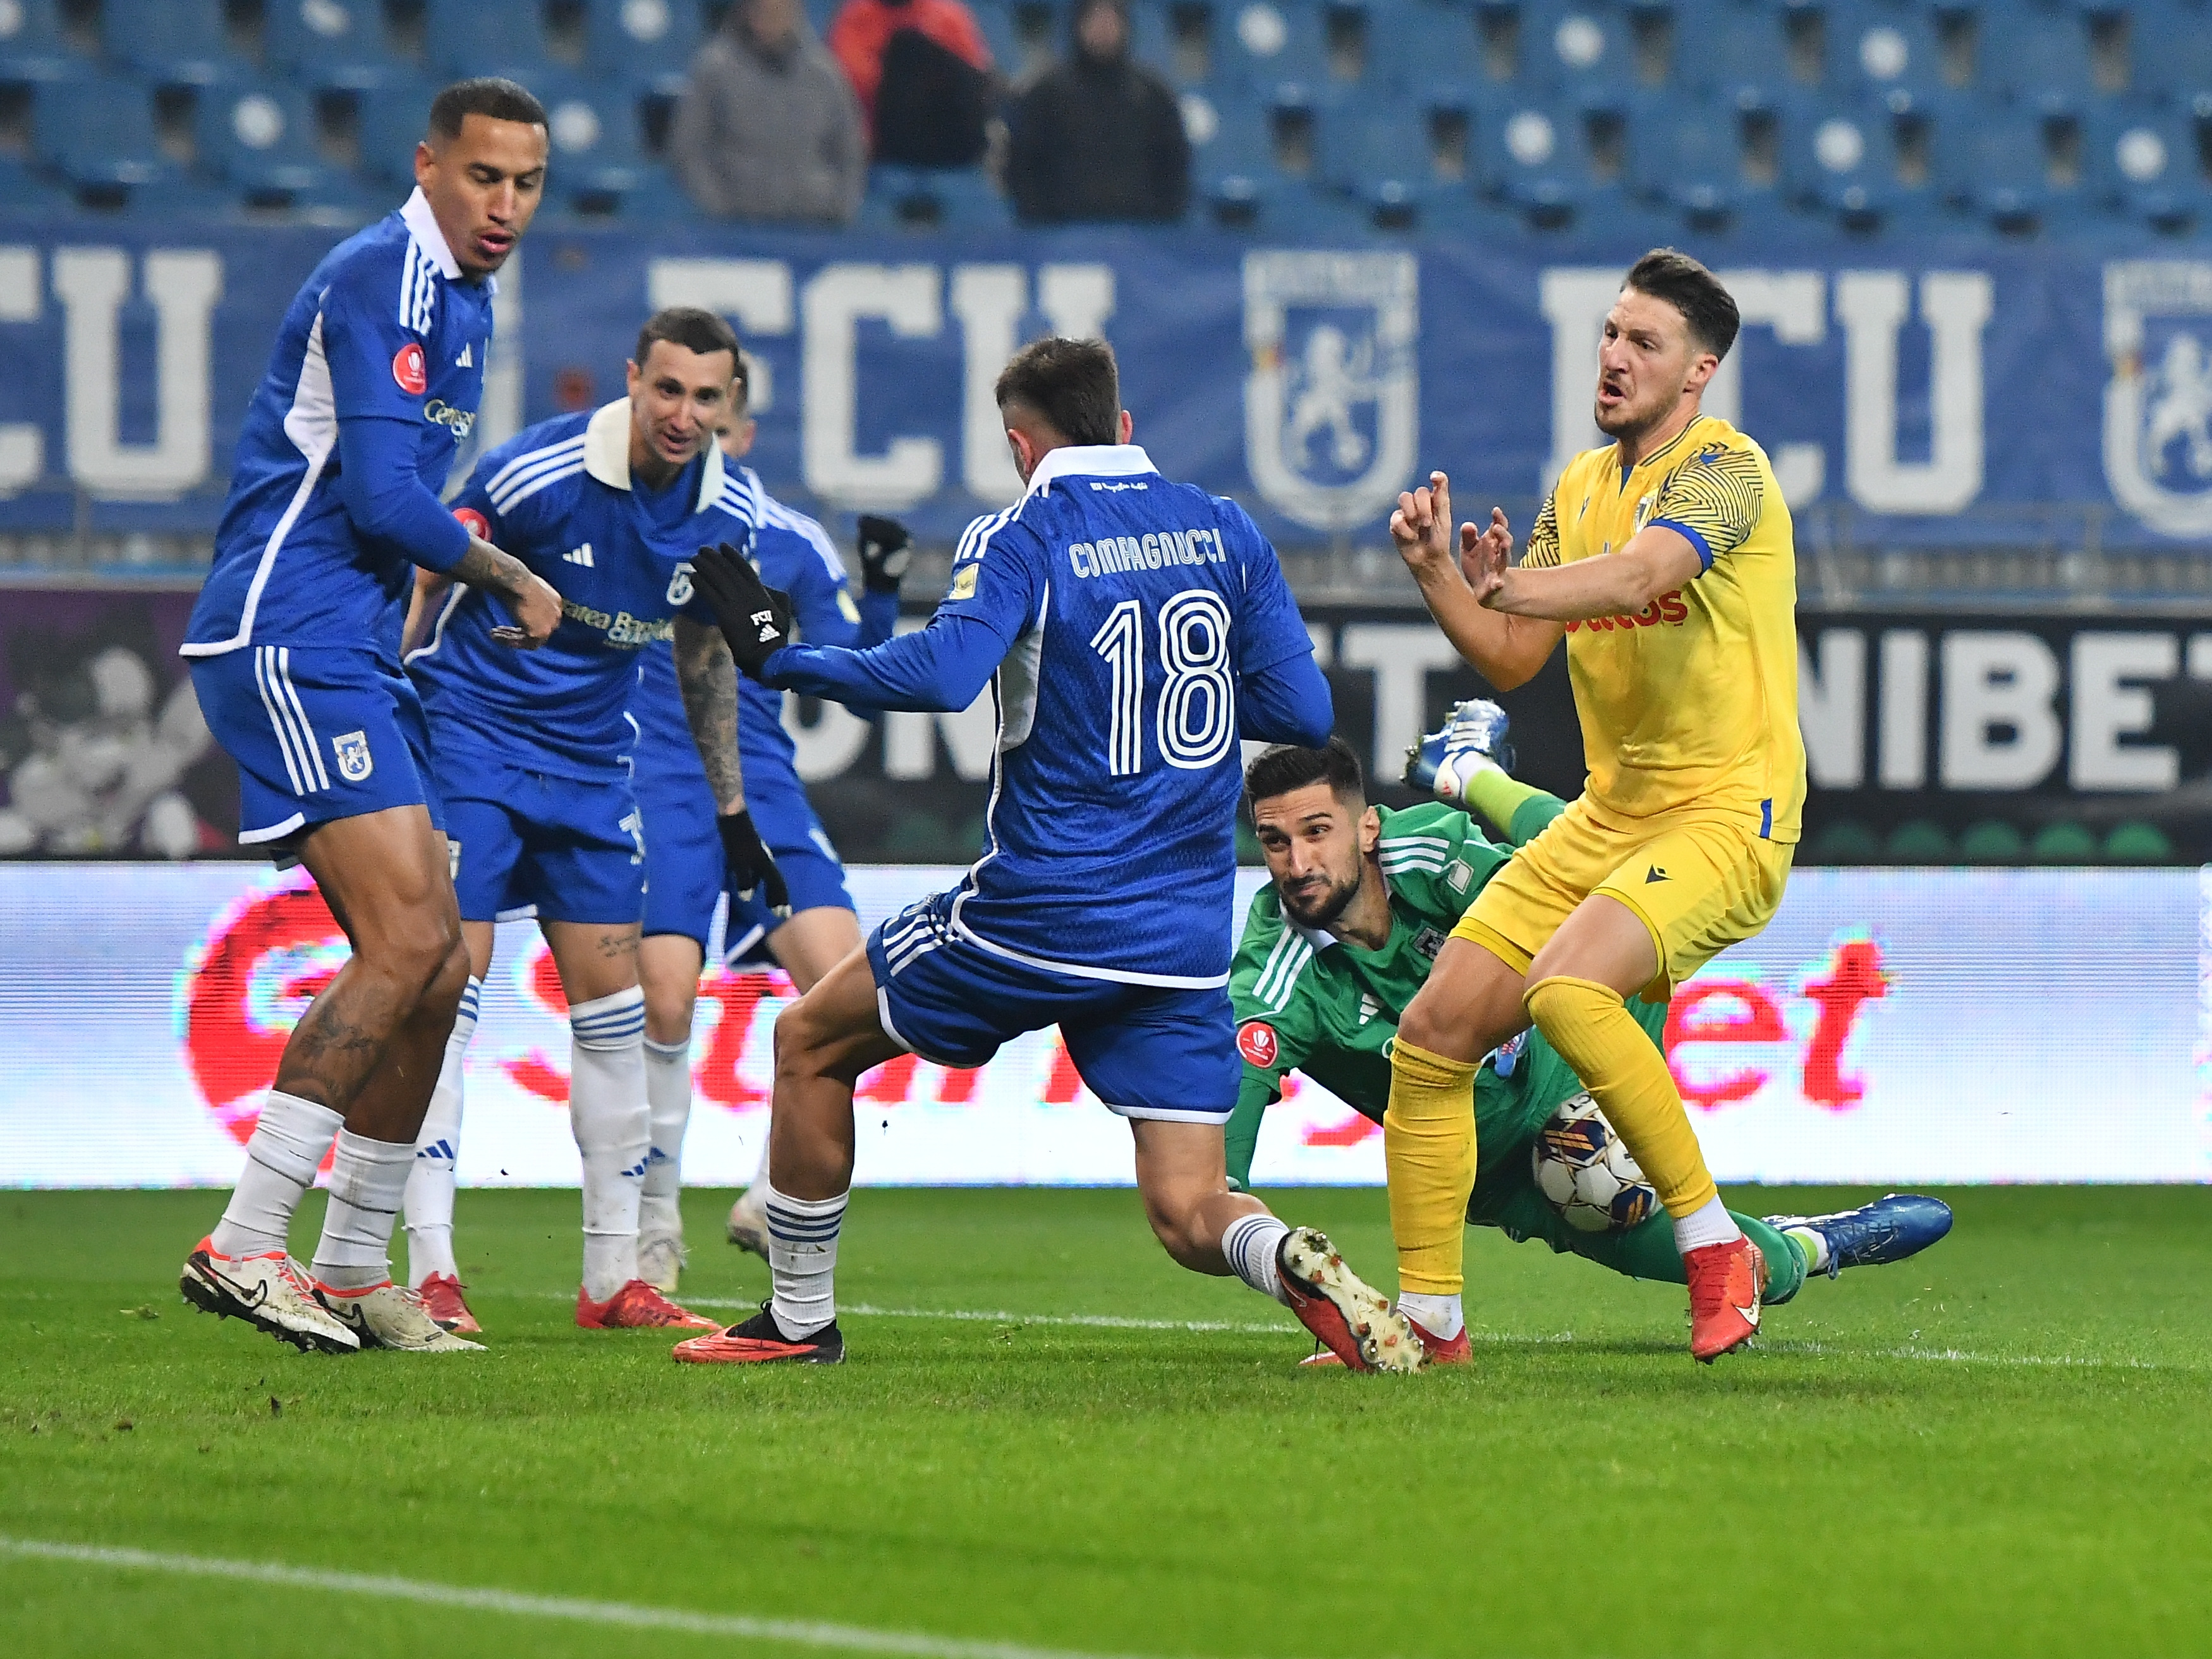 Petrolul - FCU Craiova 0-0, ACUM, Digi Sport 1. Meciul care închide prima etapă din play-out